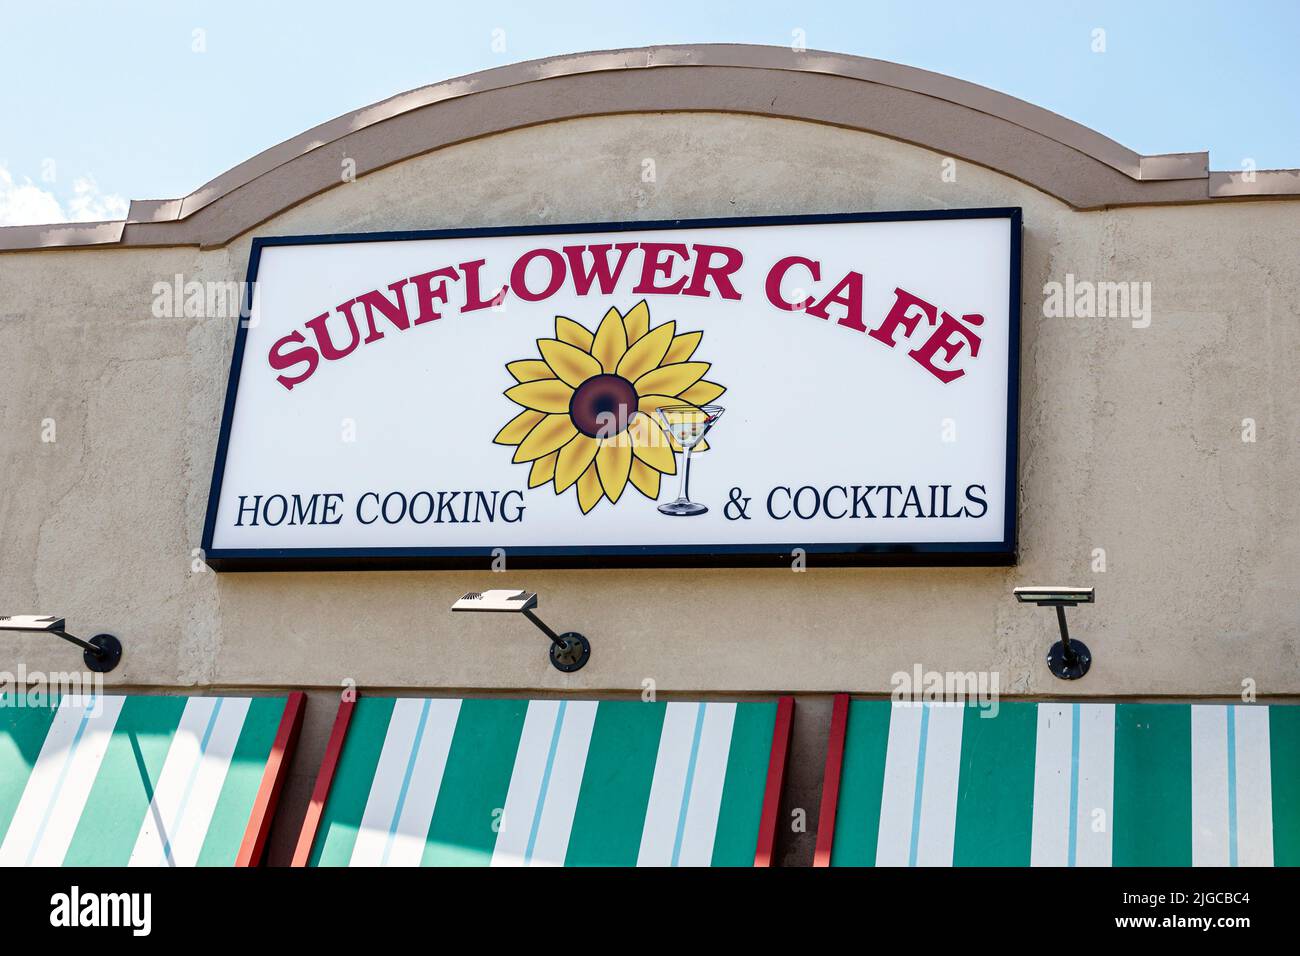 Fort ft. Myers Florida, Sunflower Cafe restaurant restaurants à l'extérieur panneau extérieur cuisine maison Banque D'Images